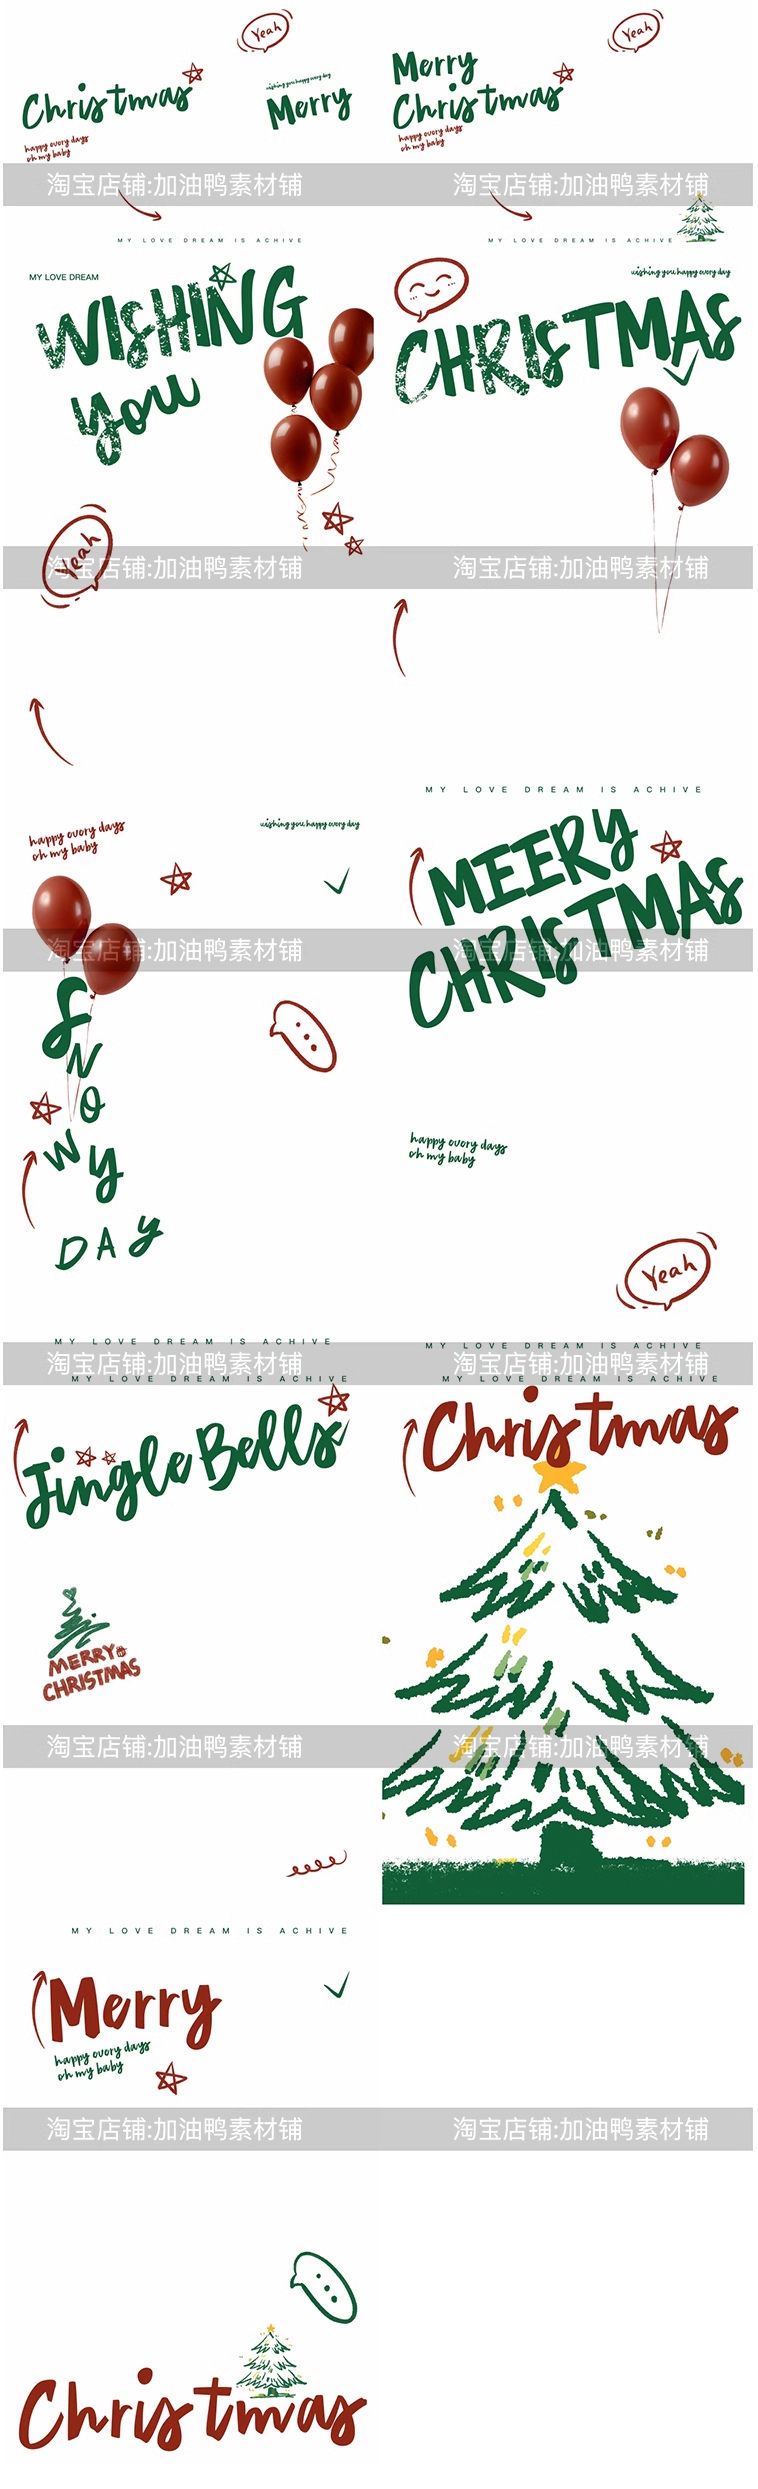 Y1553, Bộ 9 Psd Mẫu Tài Liệu Xếp Chữ Chuông Giáng Sinh, Cây Thông Noel Phong Cách Graffiti Ghép ảnh Trẻ Em Dễ Thương 2